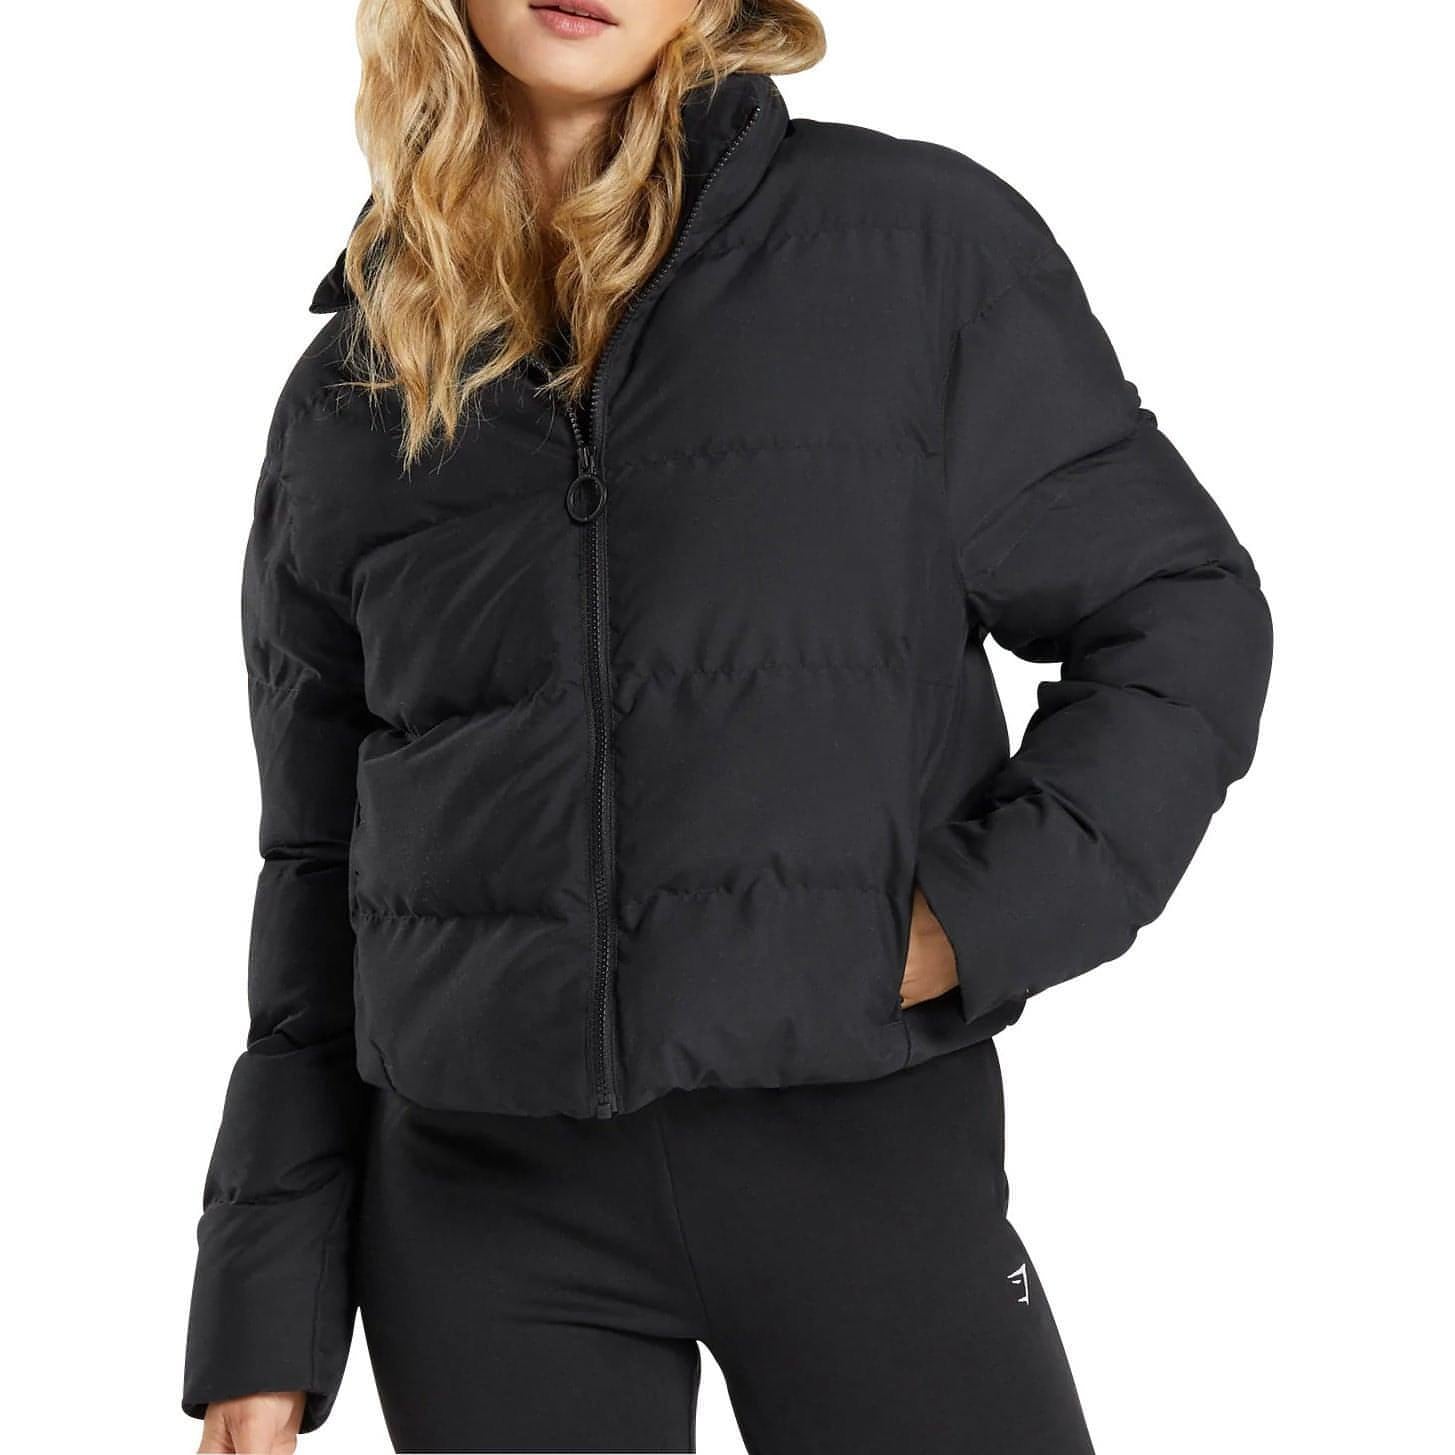 Dkny Packable Puffer Jacket Women's Black S | eBay